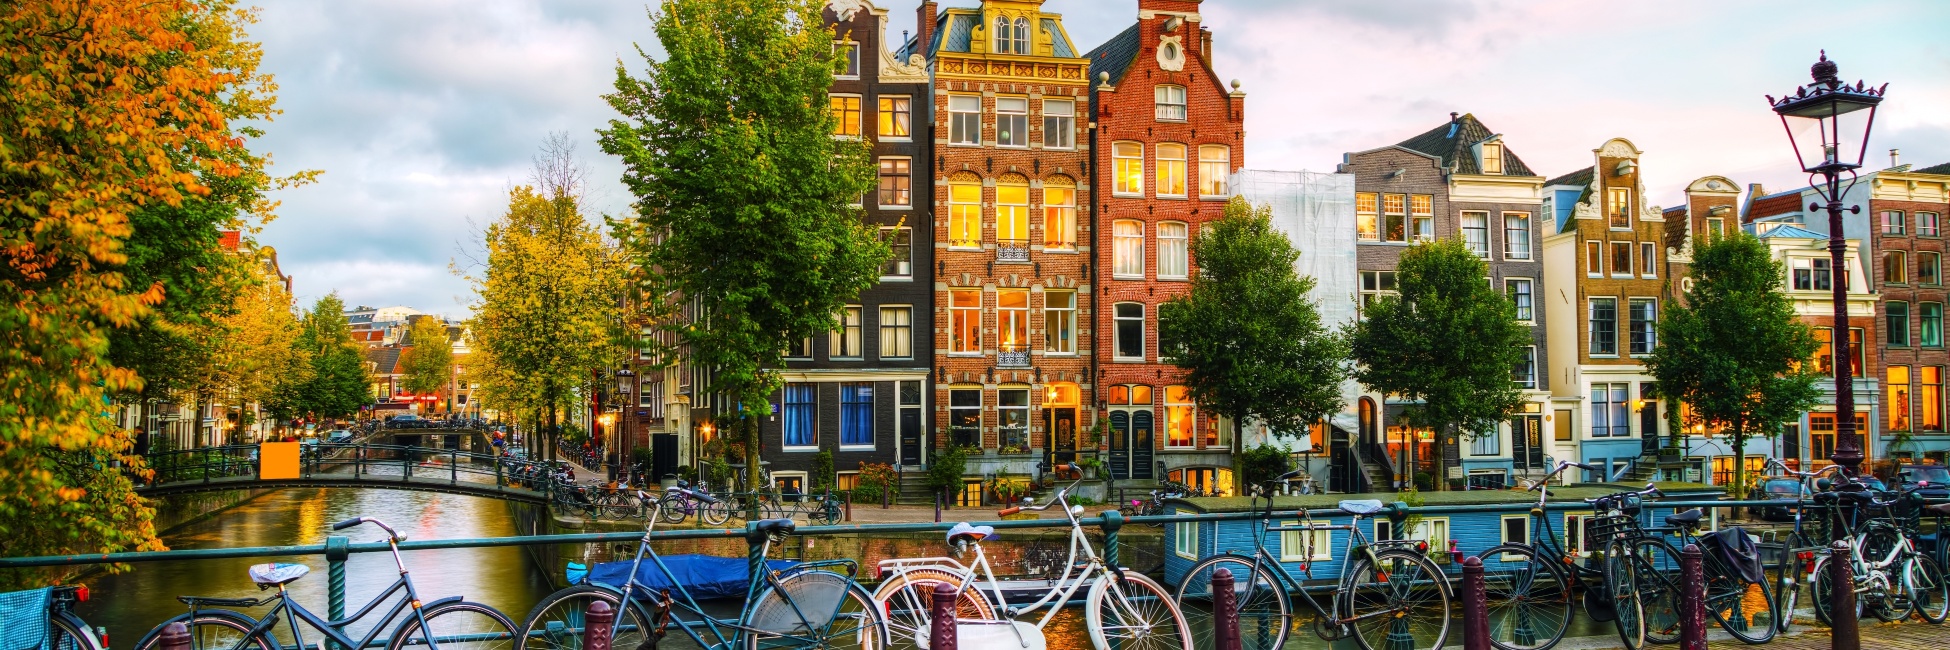 Amsterdam et ses vélos